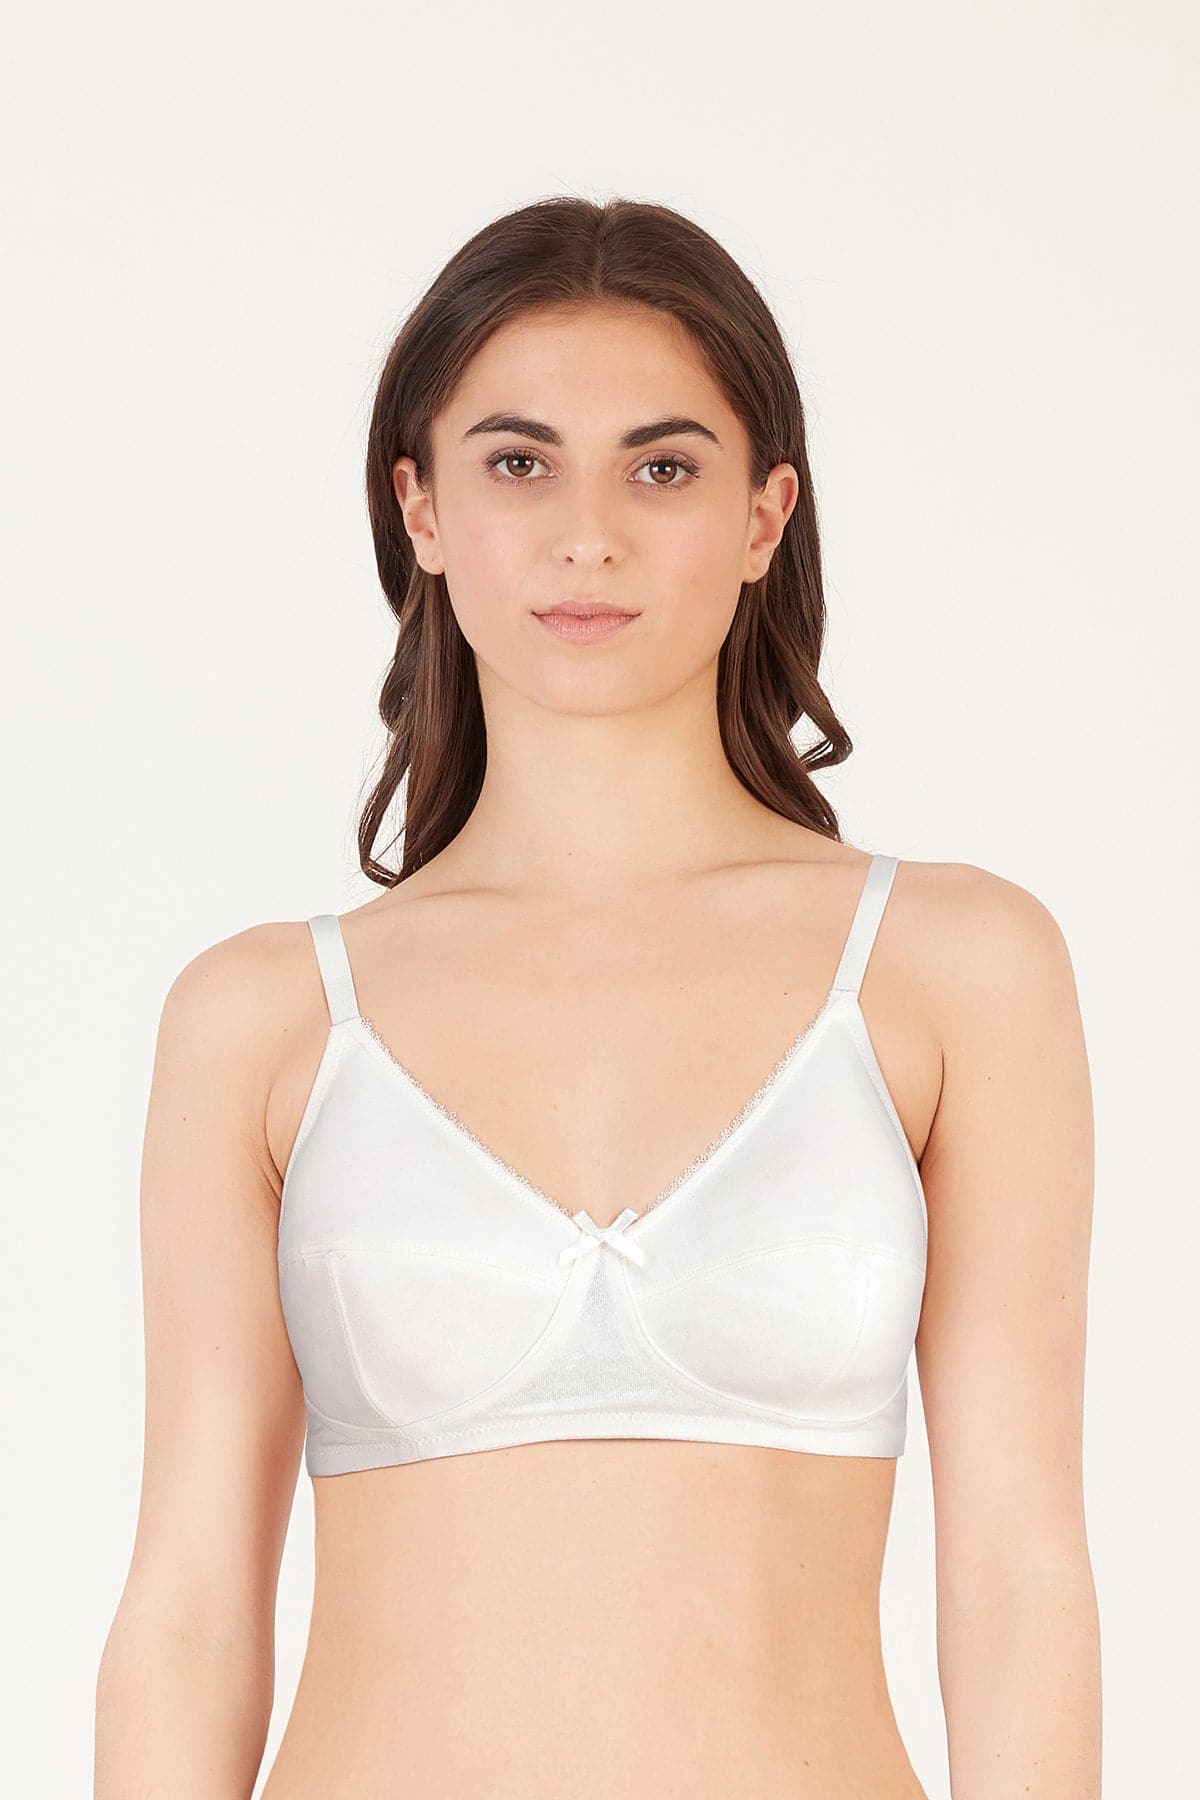 Buy She's Secret Cotton Bra for Women's Non-Padded Non-Wired Full